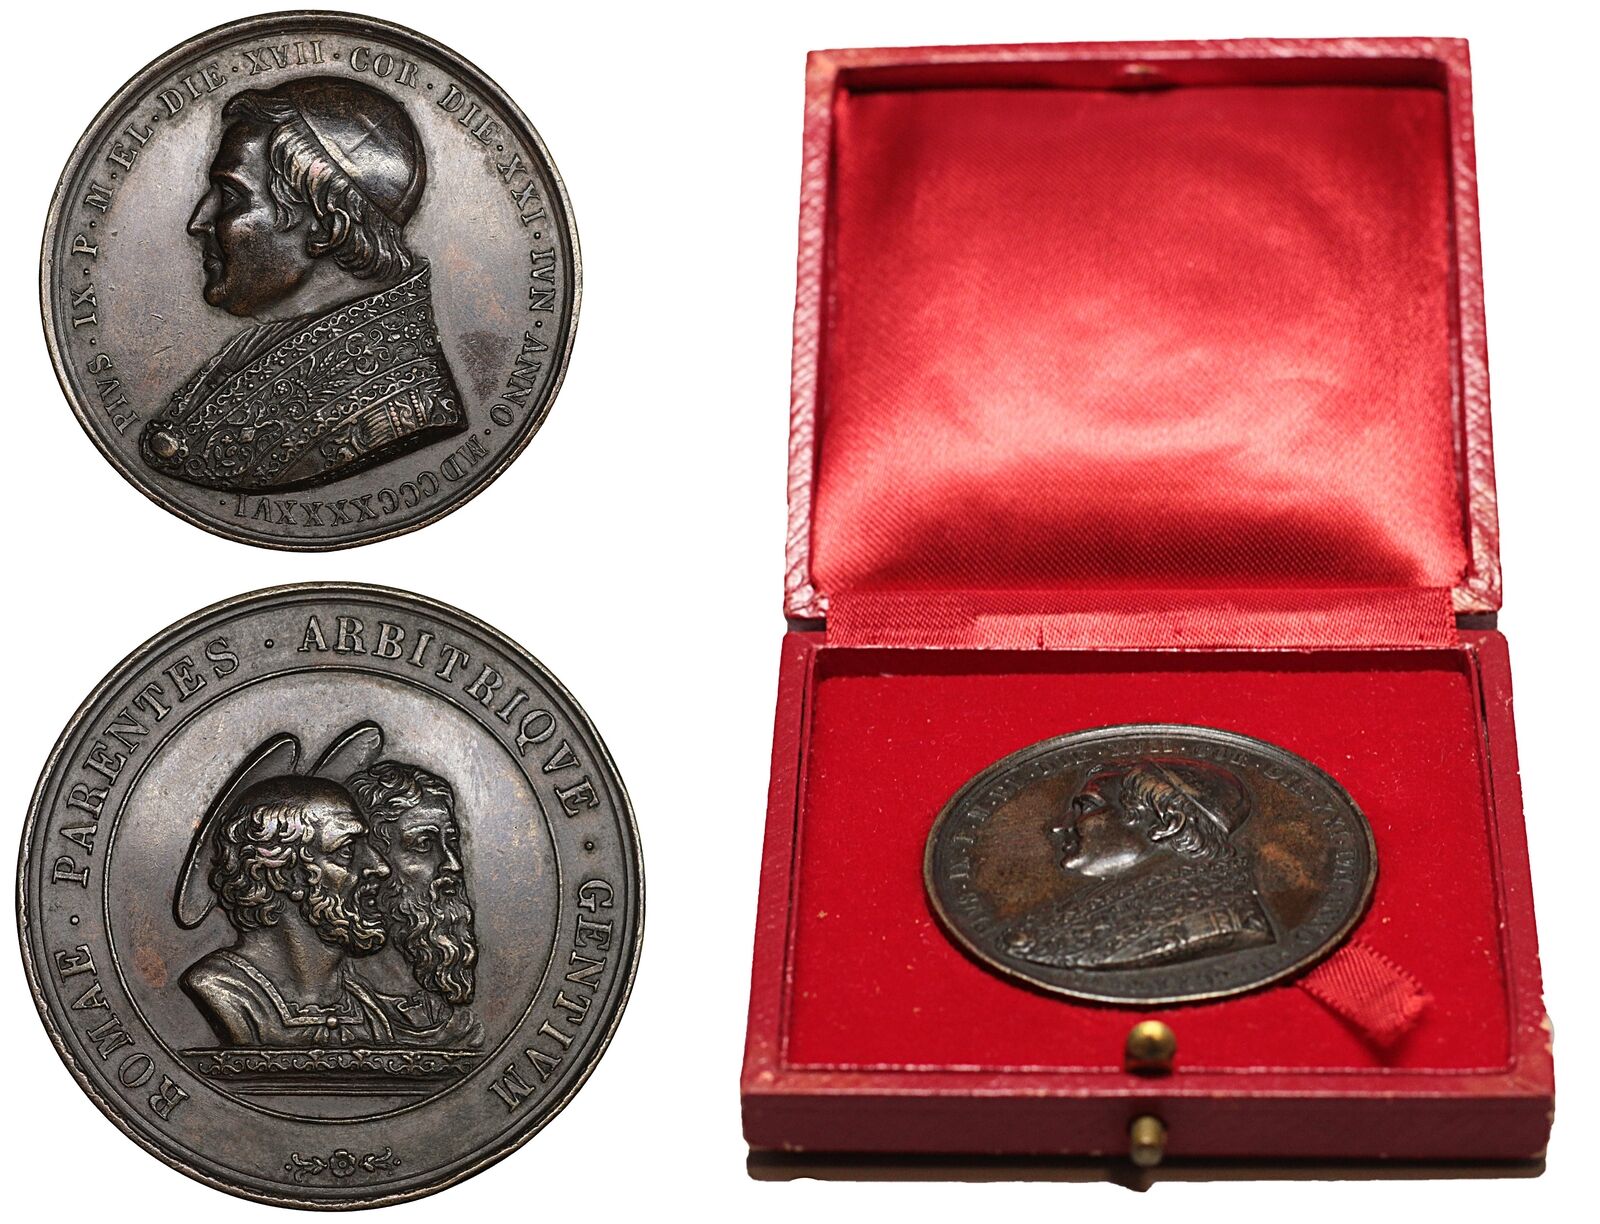 Pope Pius IX Medal 1846 Rare High grade Vatican Papal States Original Rome